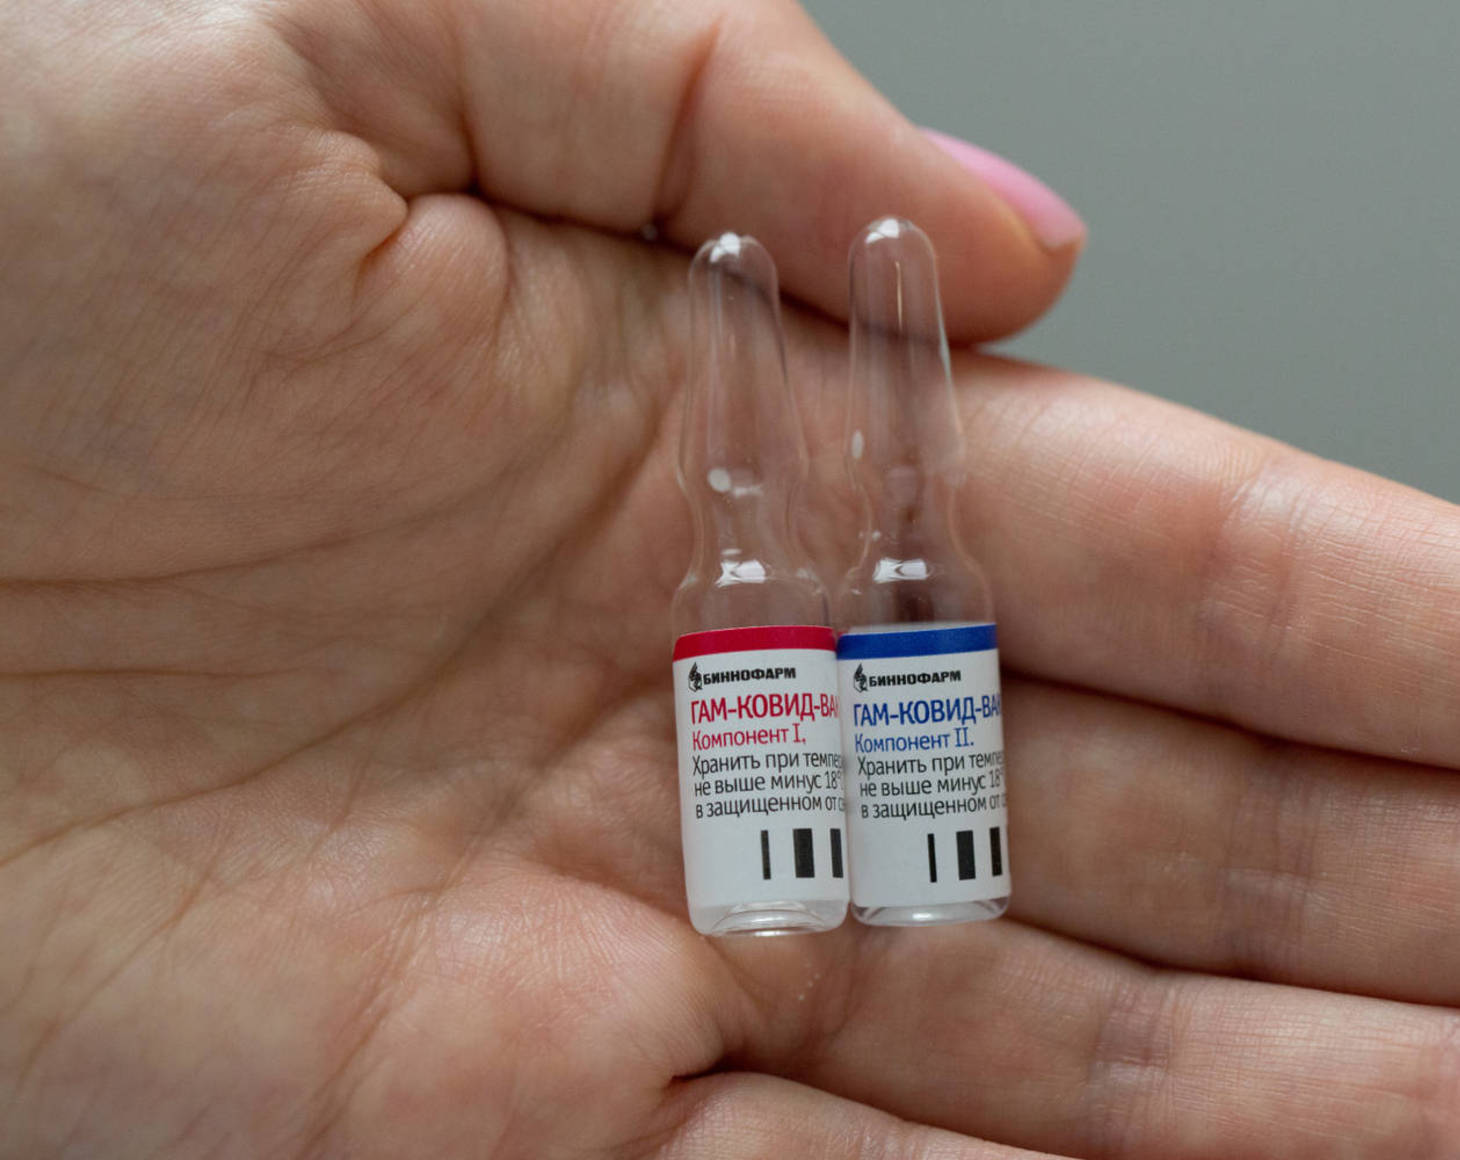 Vacina russa contra covid-19 produziu anticorpos em teste inicial